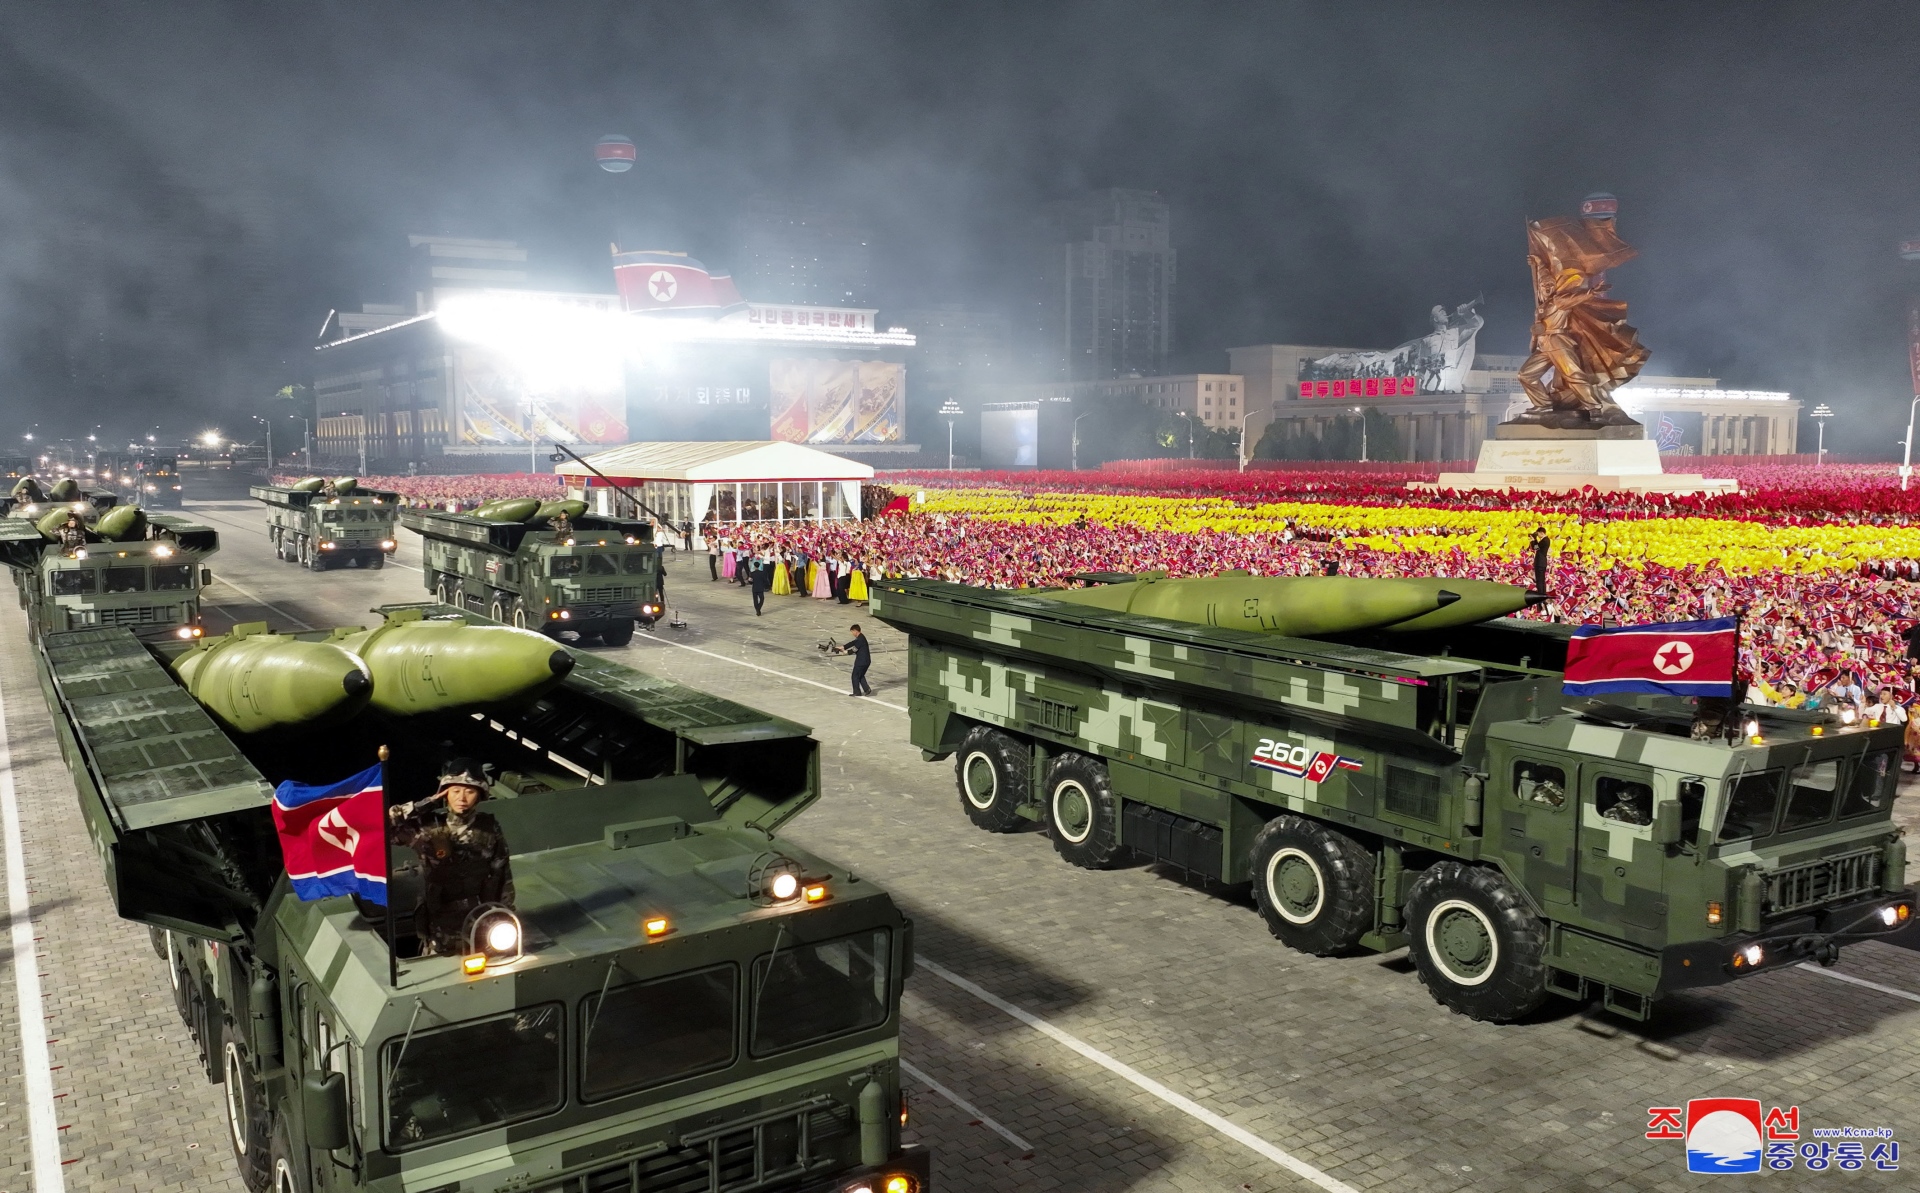 Triều Tiên ra mắt nhiều vũ khí hiện đại trong lễ duyệt binh - 11